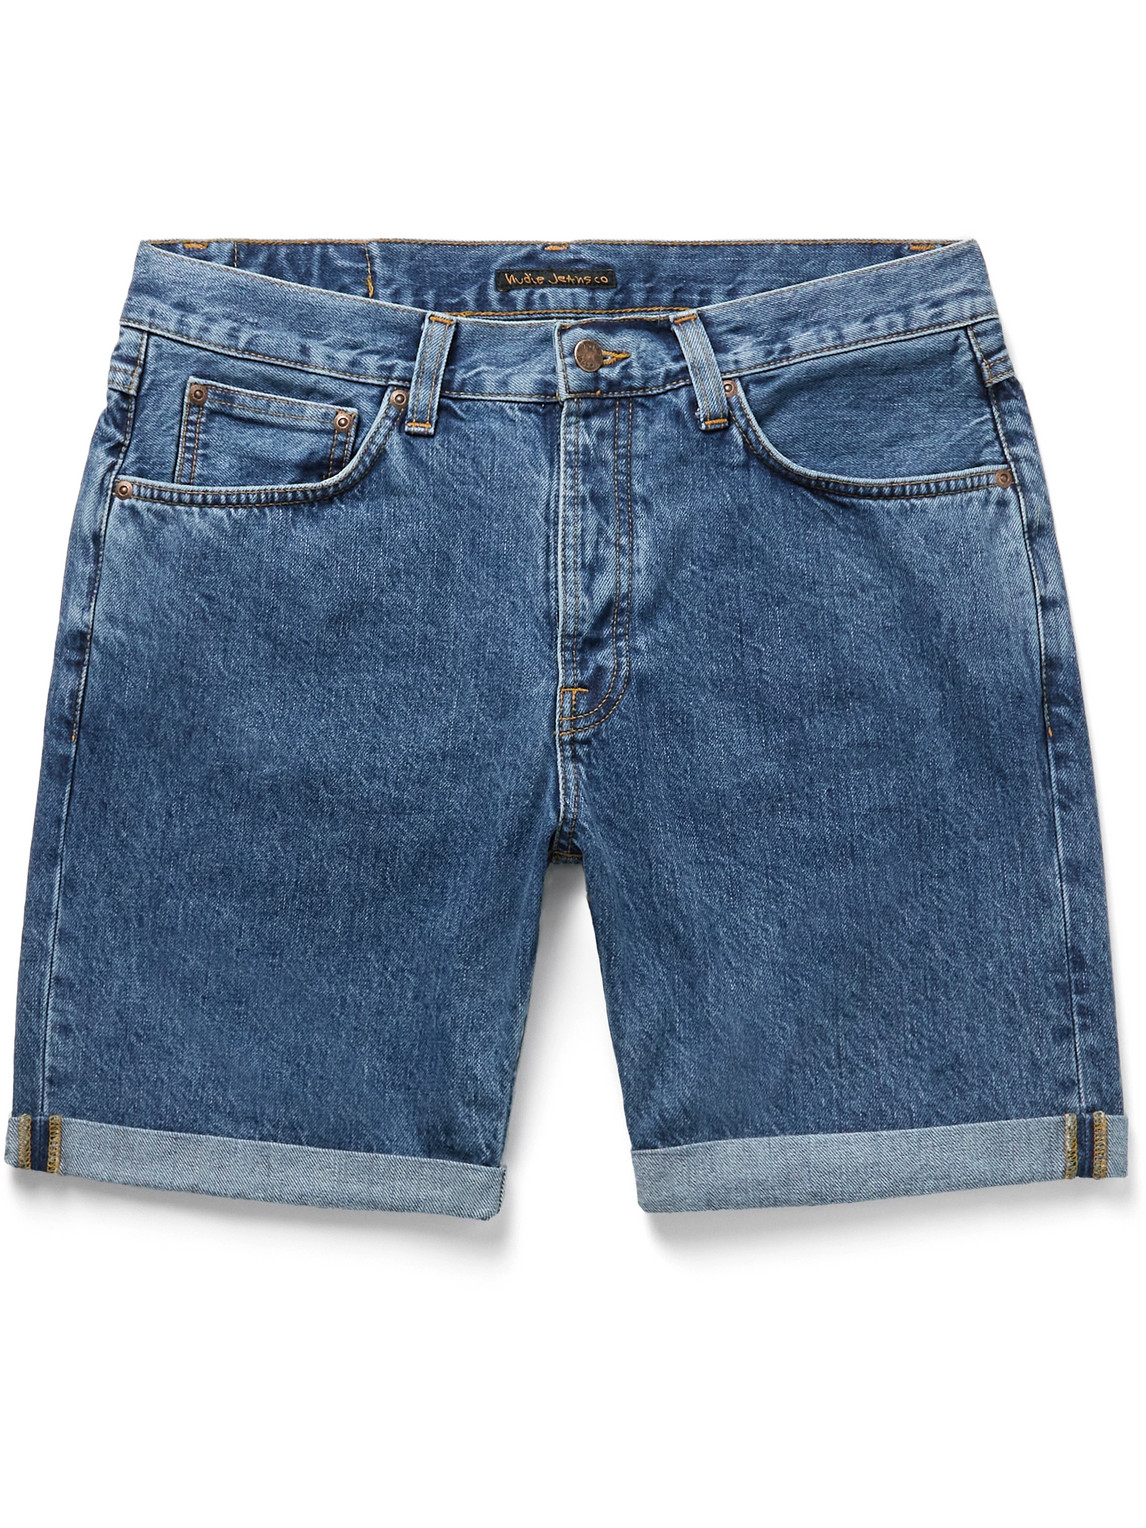 Nudie Jeans - Josh Straight-Leg Denim Shorts - Men - Blue - UK/US 29 for Men